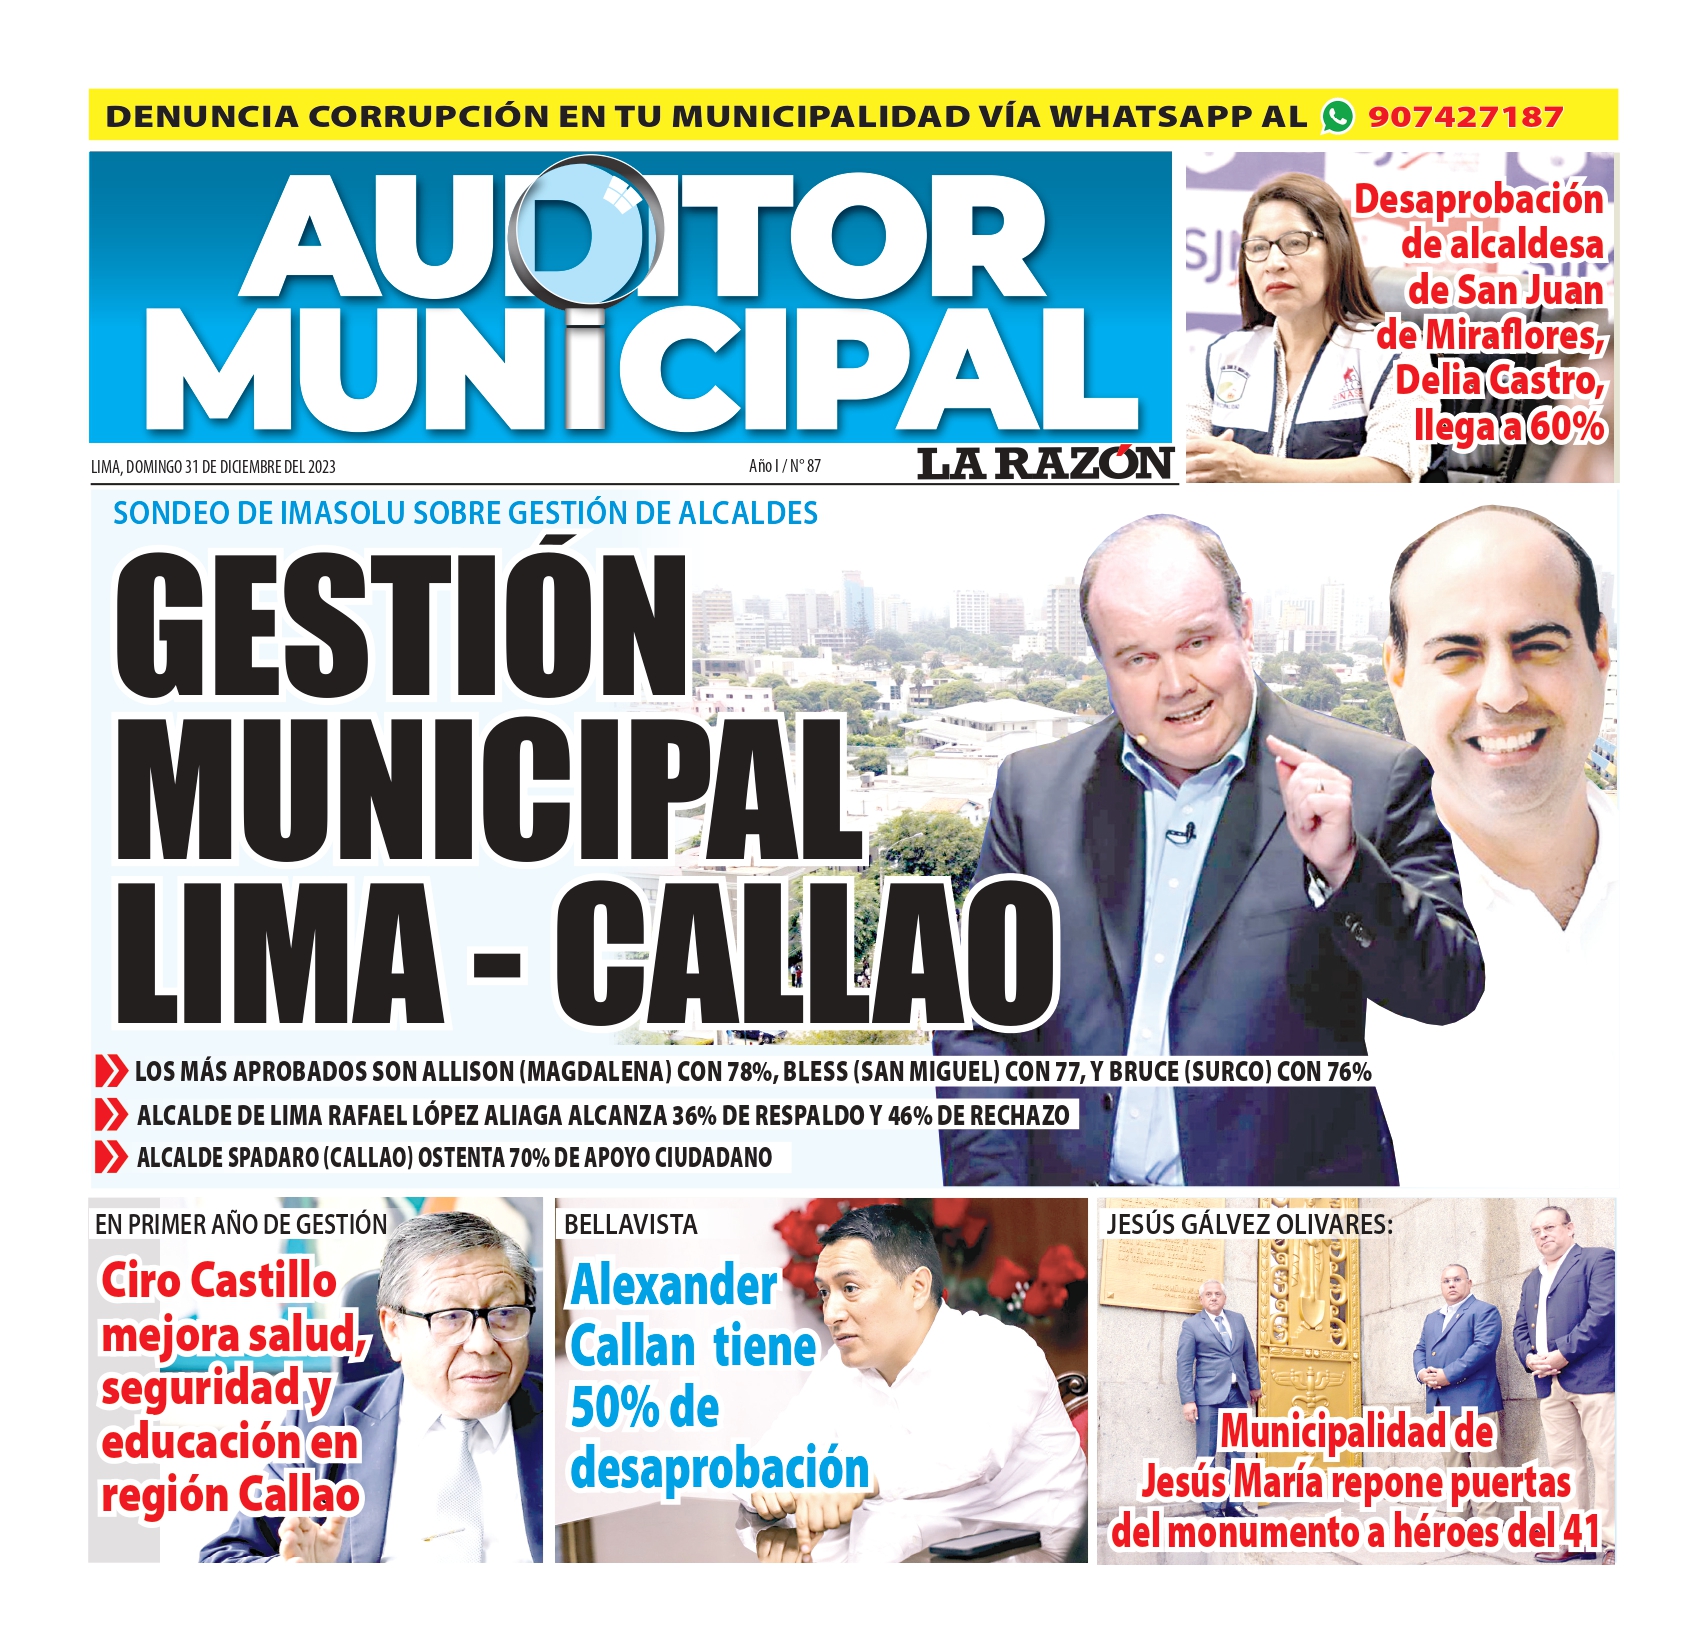 Evaluación de la gestión municipal de alcaldes de Lima y Callao